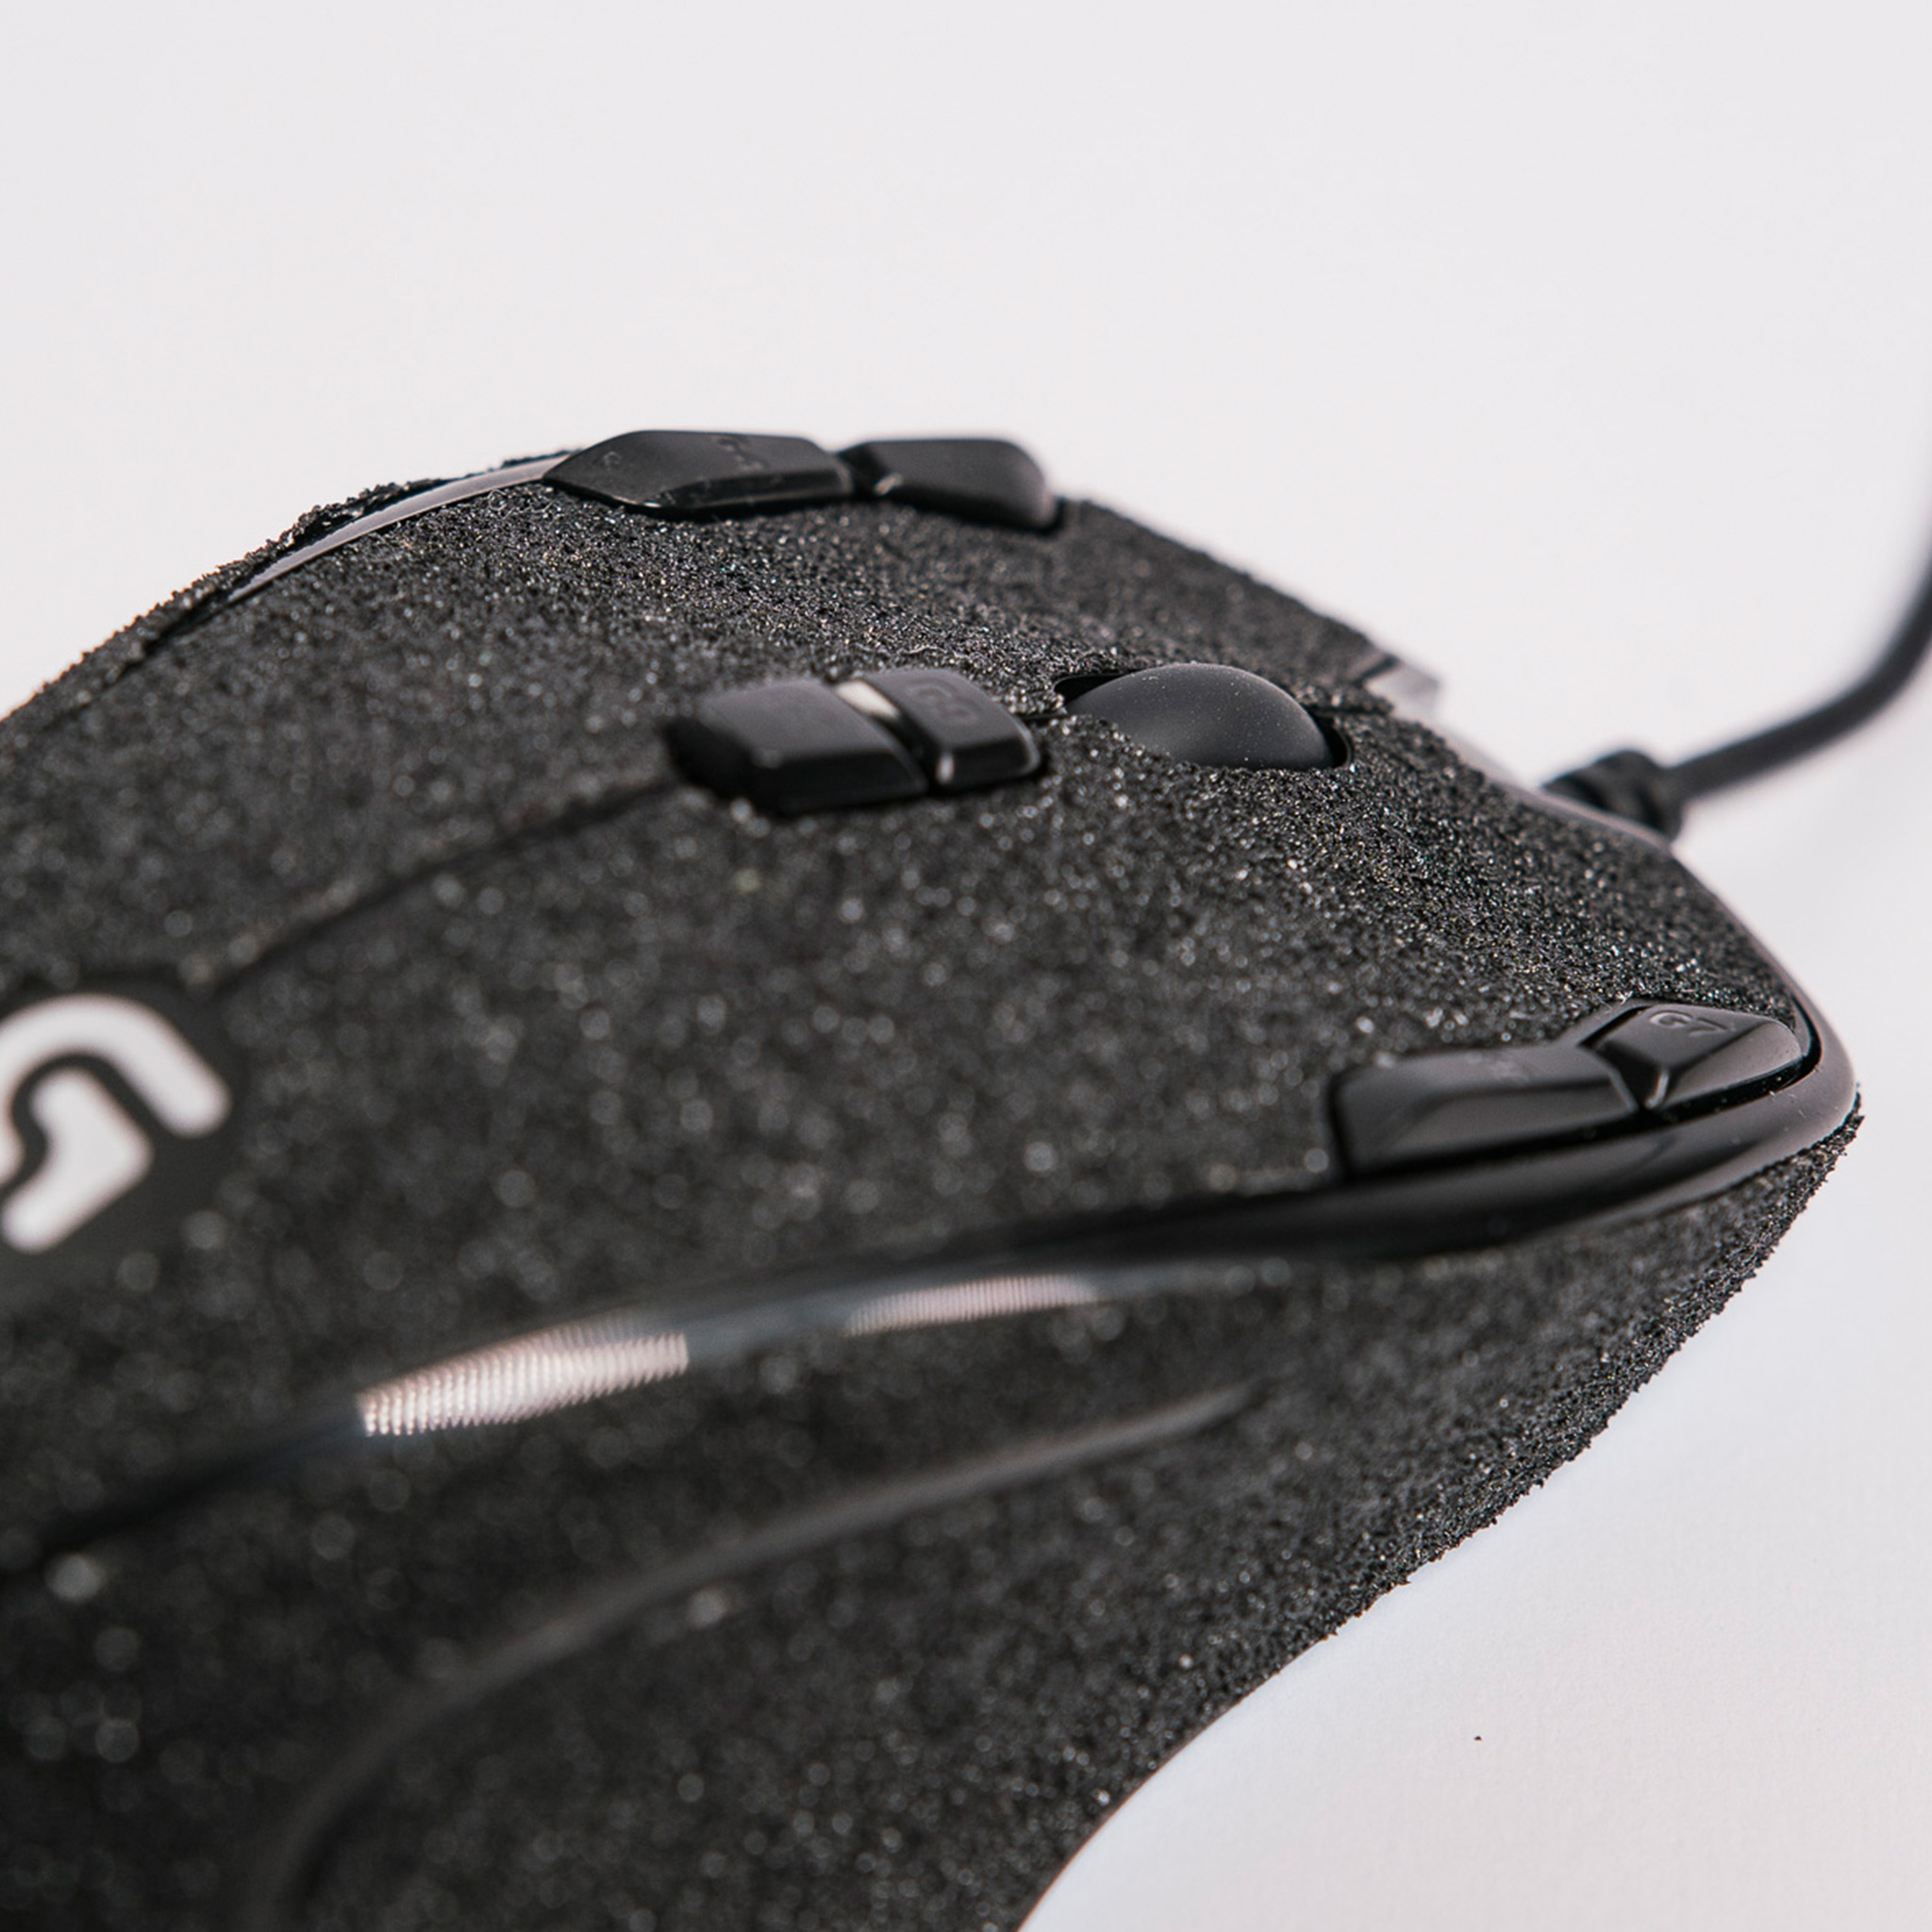 Logitech G300s Antgrip Antgrip Upgrade Your Gaming Mouse Make Your Gaming Mouse Grip Better